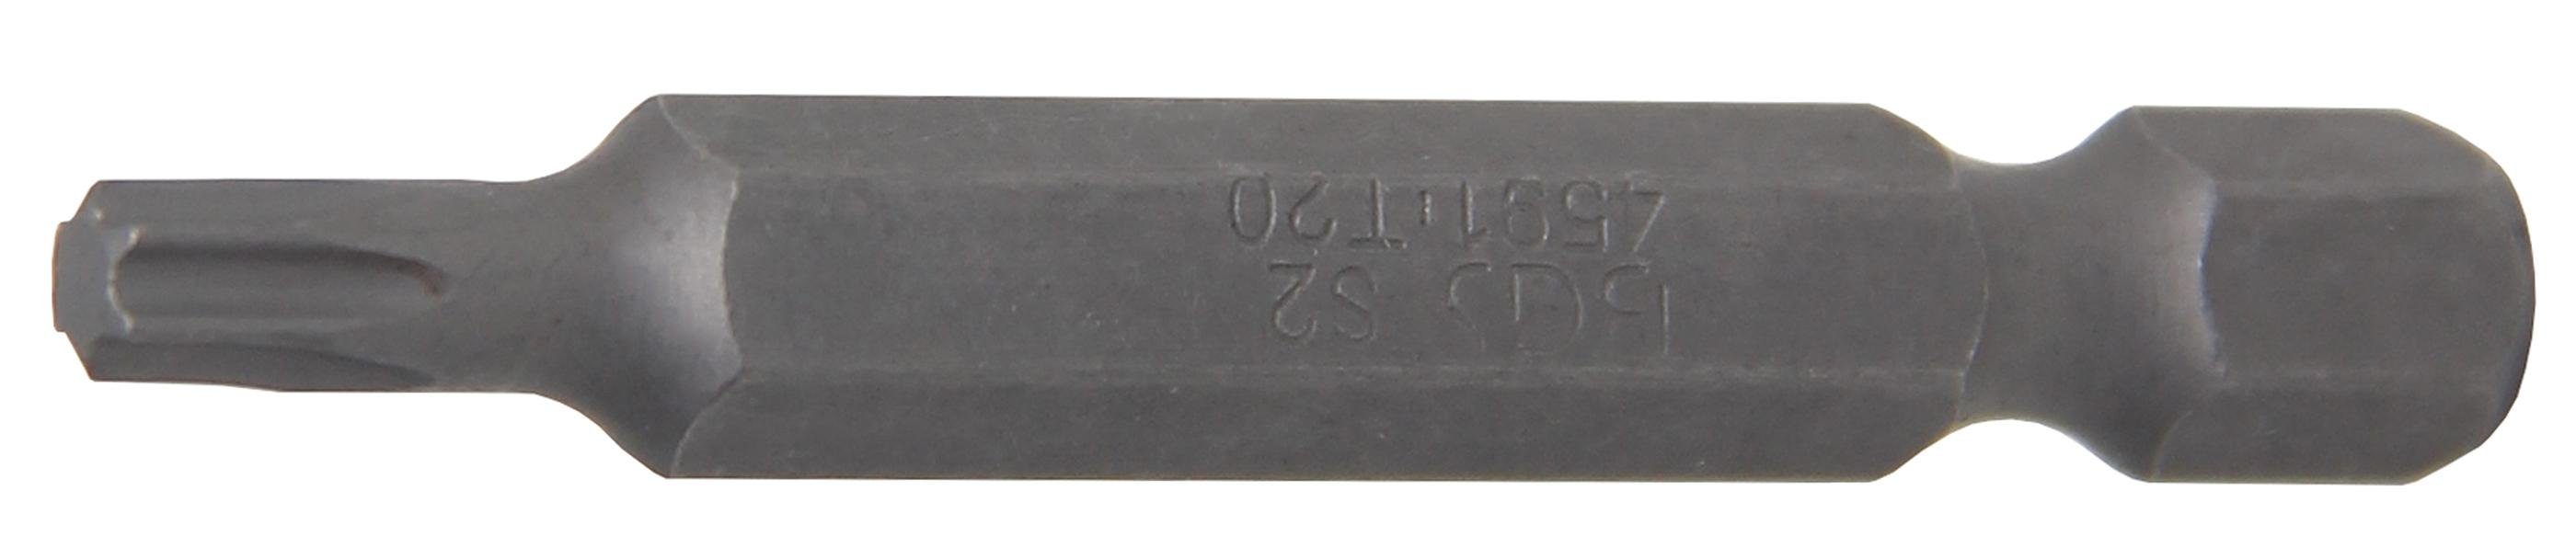 BGS technic Bit-Schraubendreher Bit, Länge 50 mm, Antrieb Außensechskant 6,3 mm (1/4), T-Profil (für Torx) T20